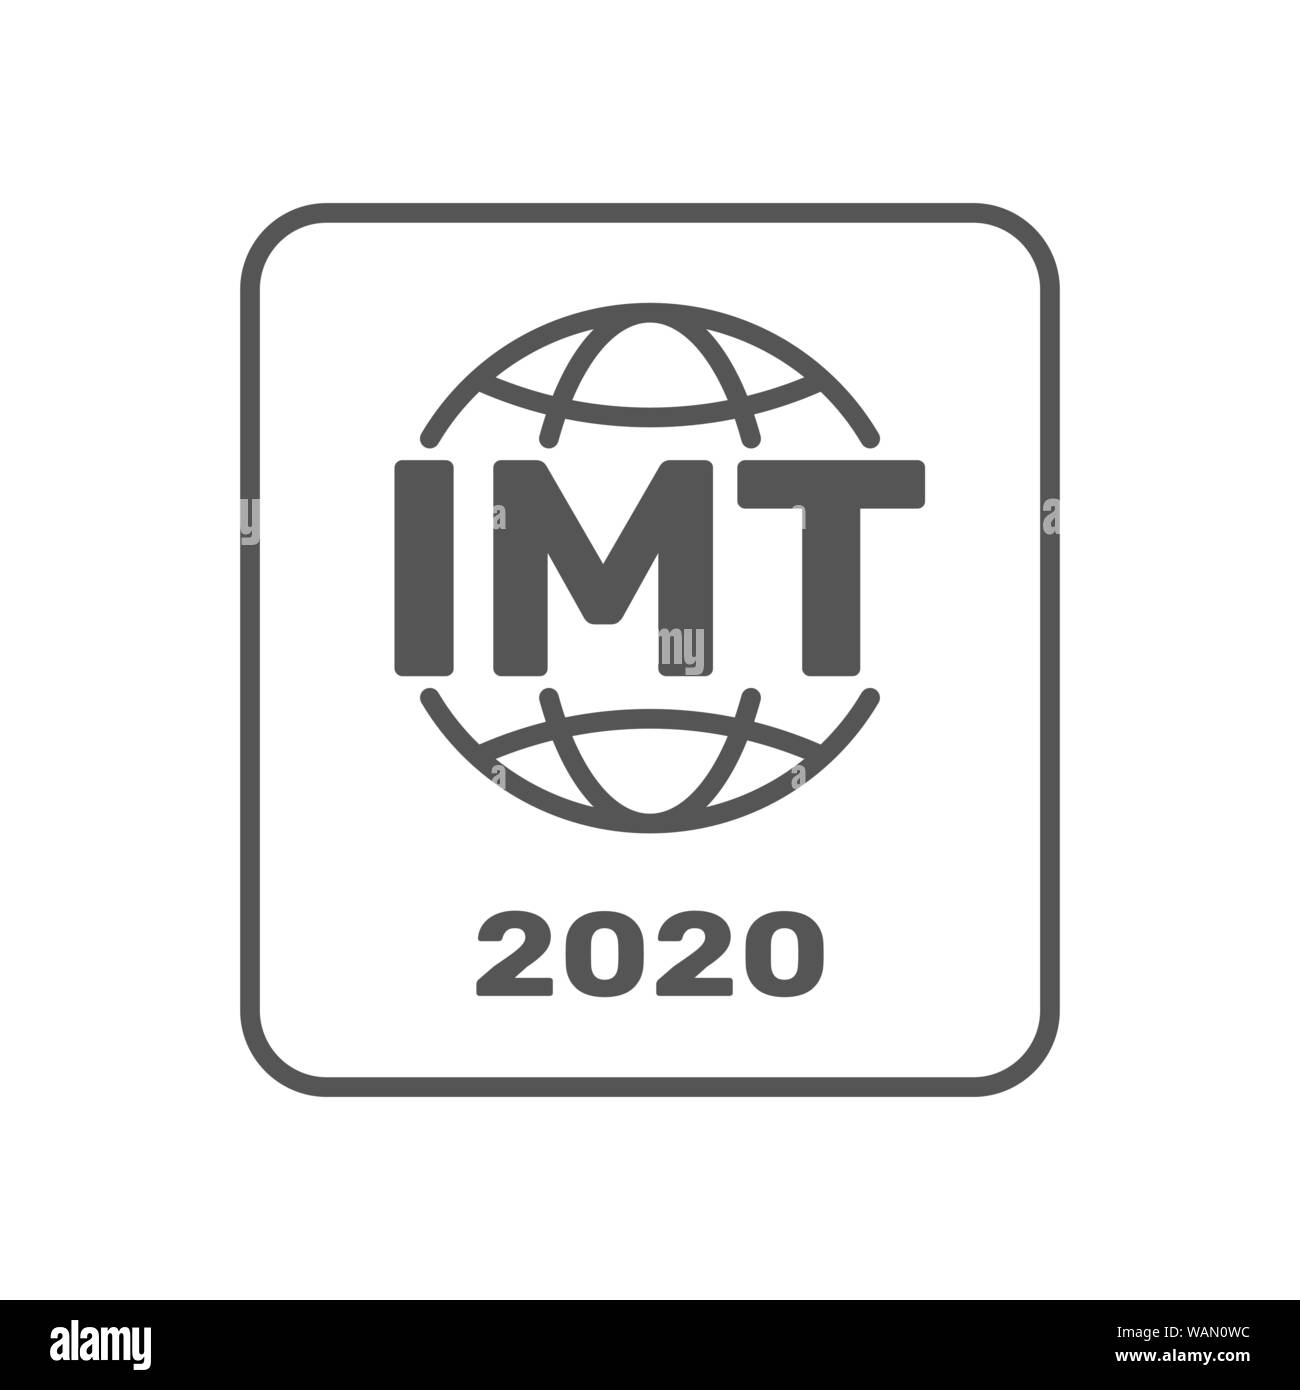 Les IMT-2020 symbole de certification. Standar International pour les réseaux 5G. Signe de 5G standard. Les IMT-2020, l'étiquette badge certifié. Timbre de certification. Télévision Illustration de Vecteur